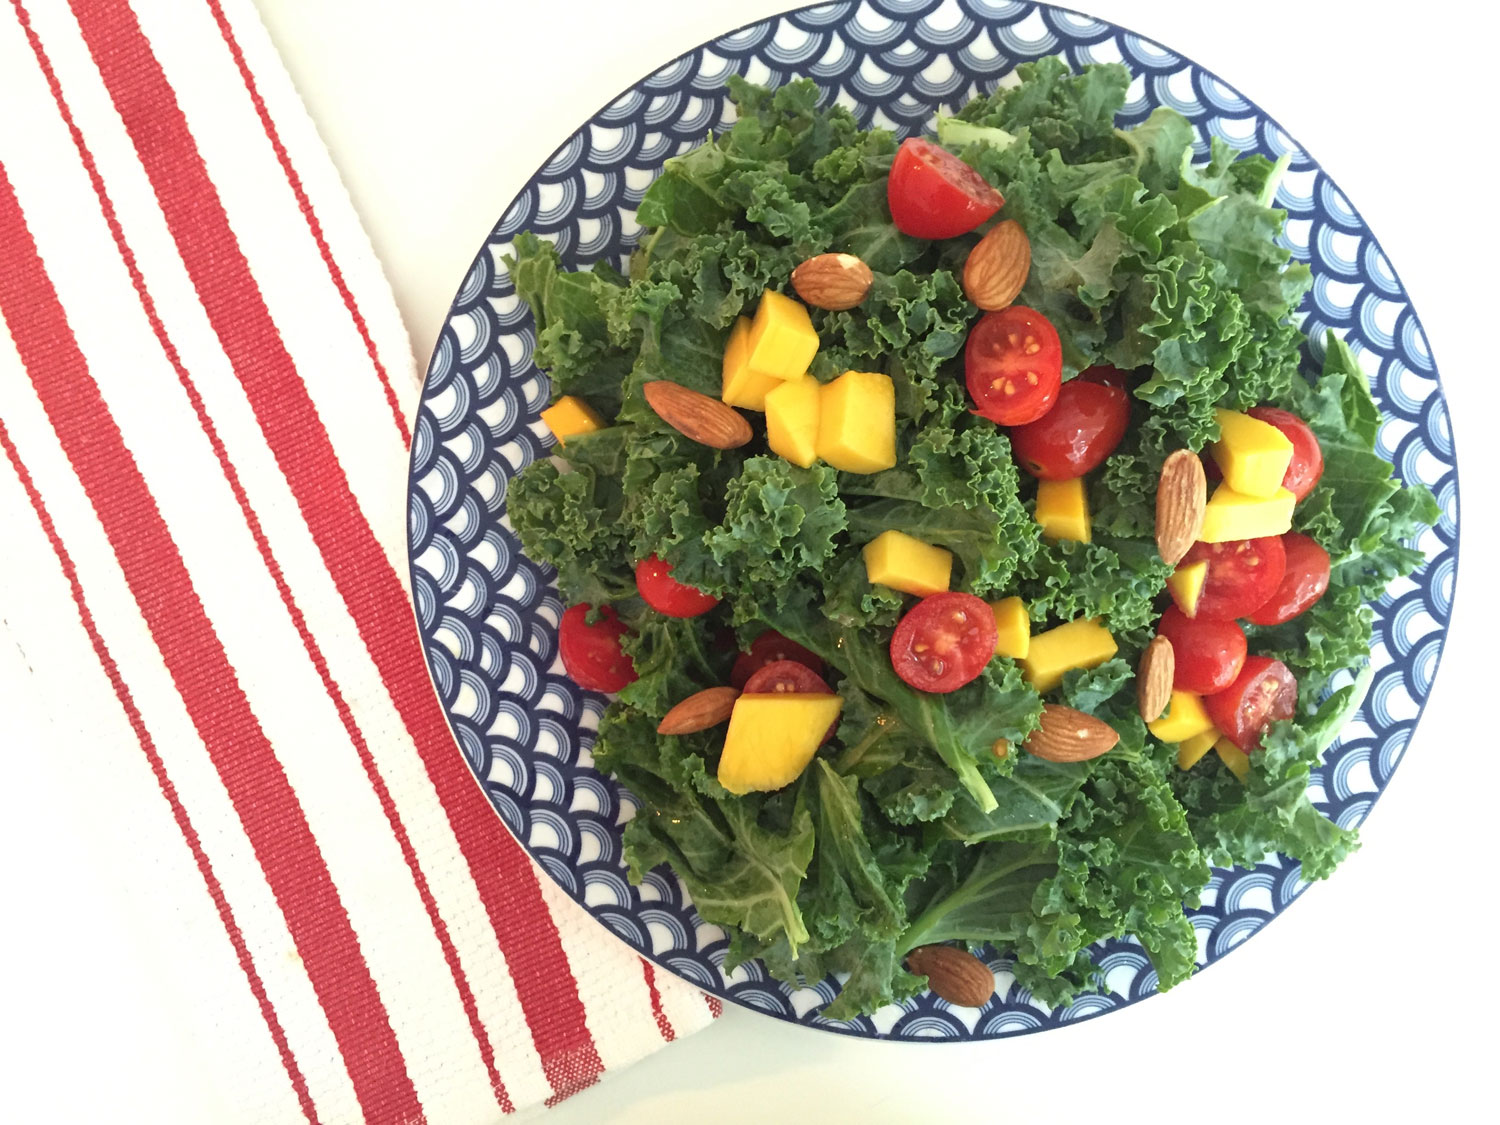 Anti-inflammatory Kale And Tomato Salad